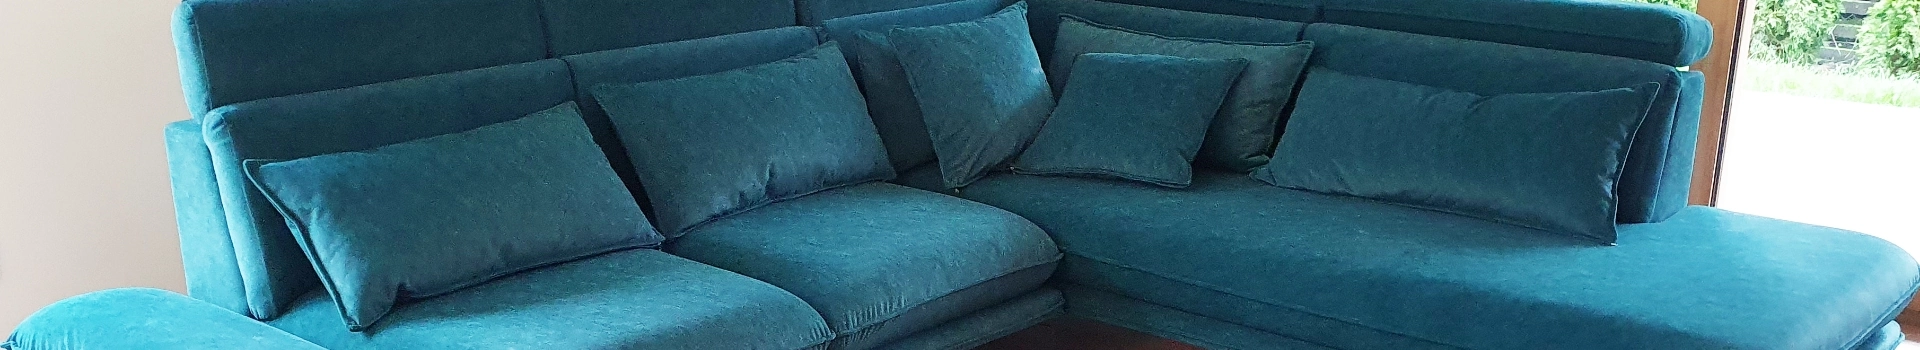 kanapa w turkusowym kolorze